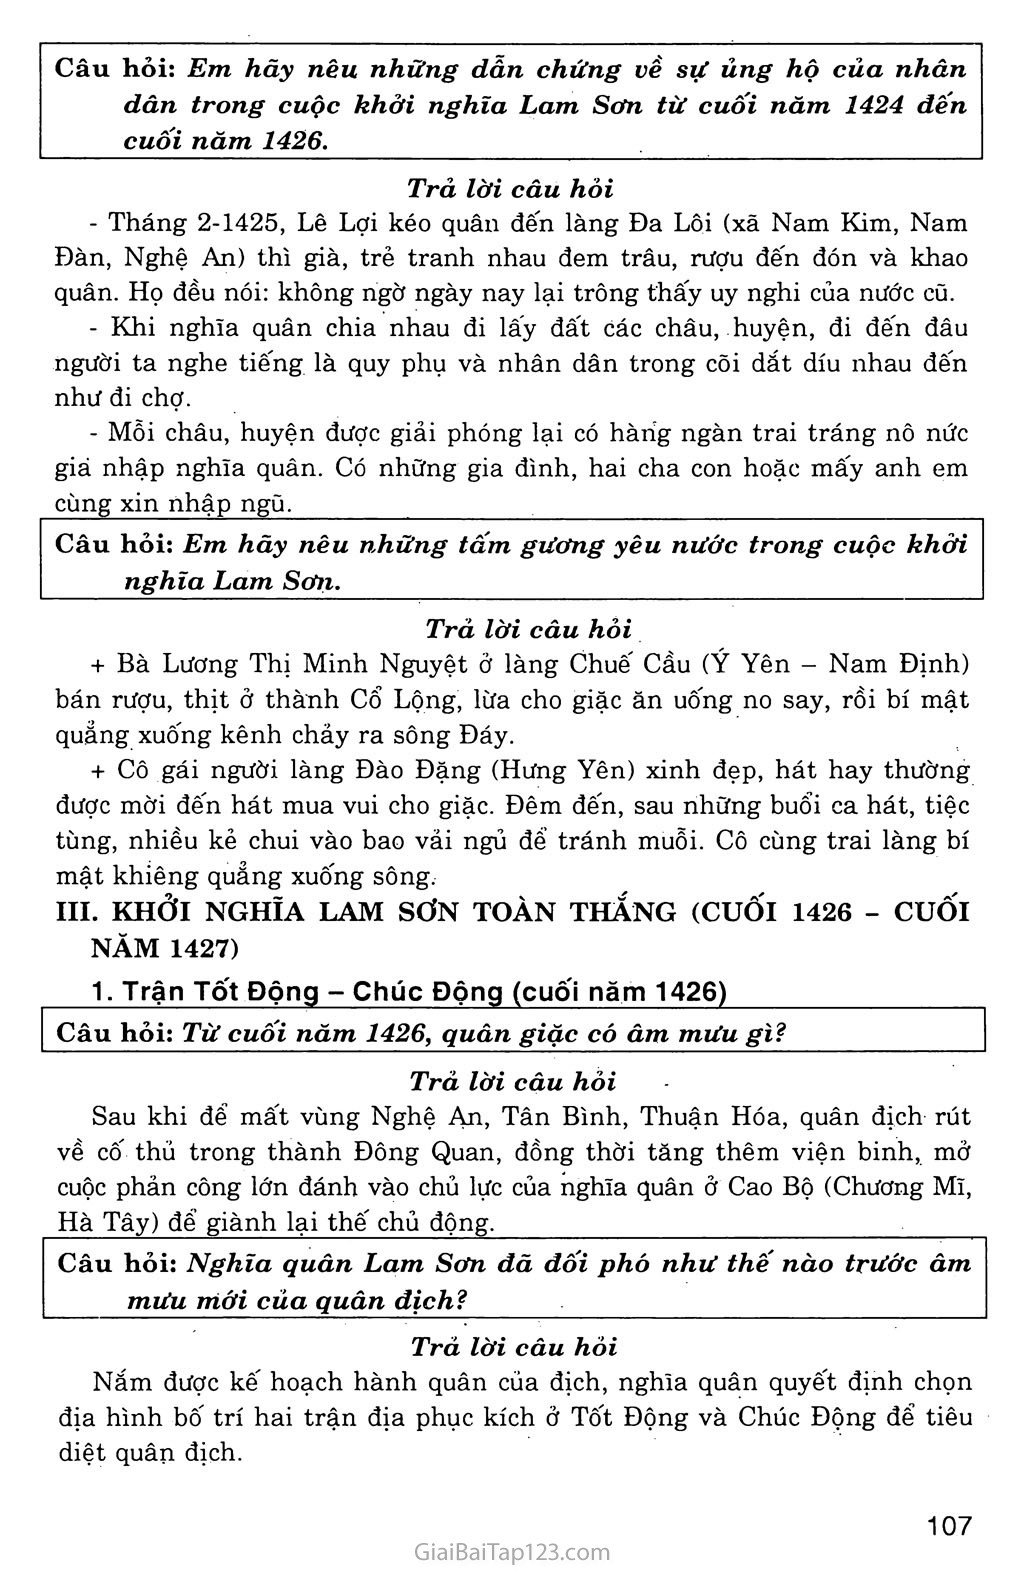 Bài 19: Cuộc khởi nghĩa Lam Sơn (1418 - 1427) trang 6